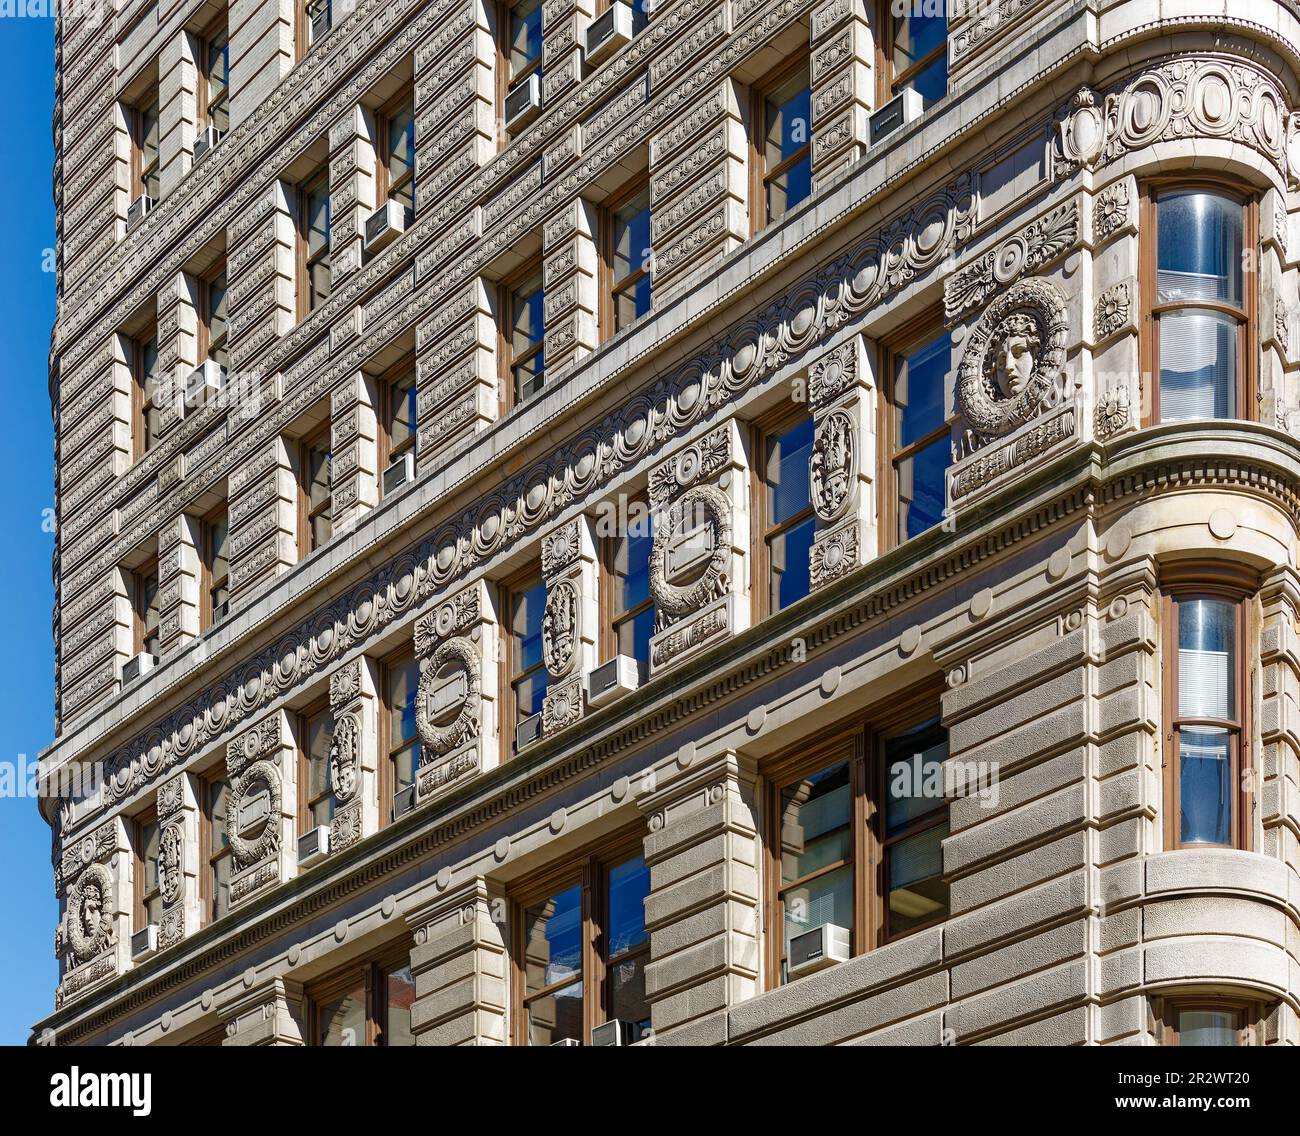 Le Flatiron Building est une icône de New York, qui se distingue par sa riche décoration en terre cuite ainsi que par sa forme triangulaire. Banque D'Images